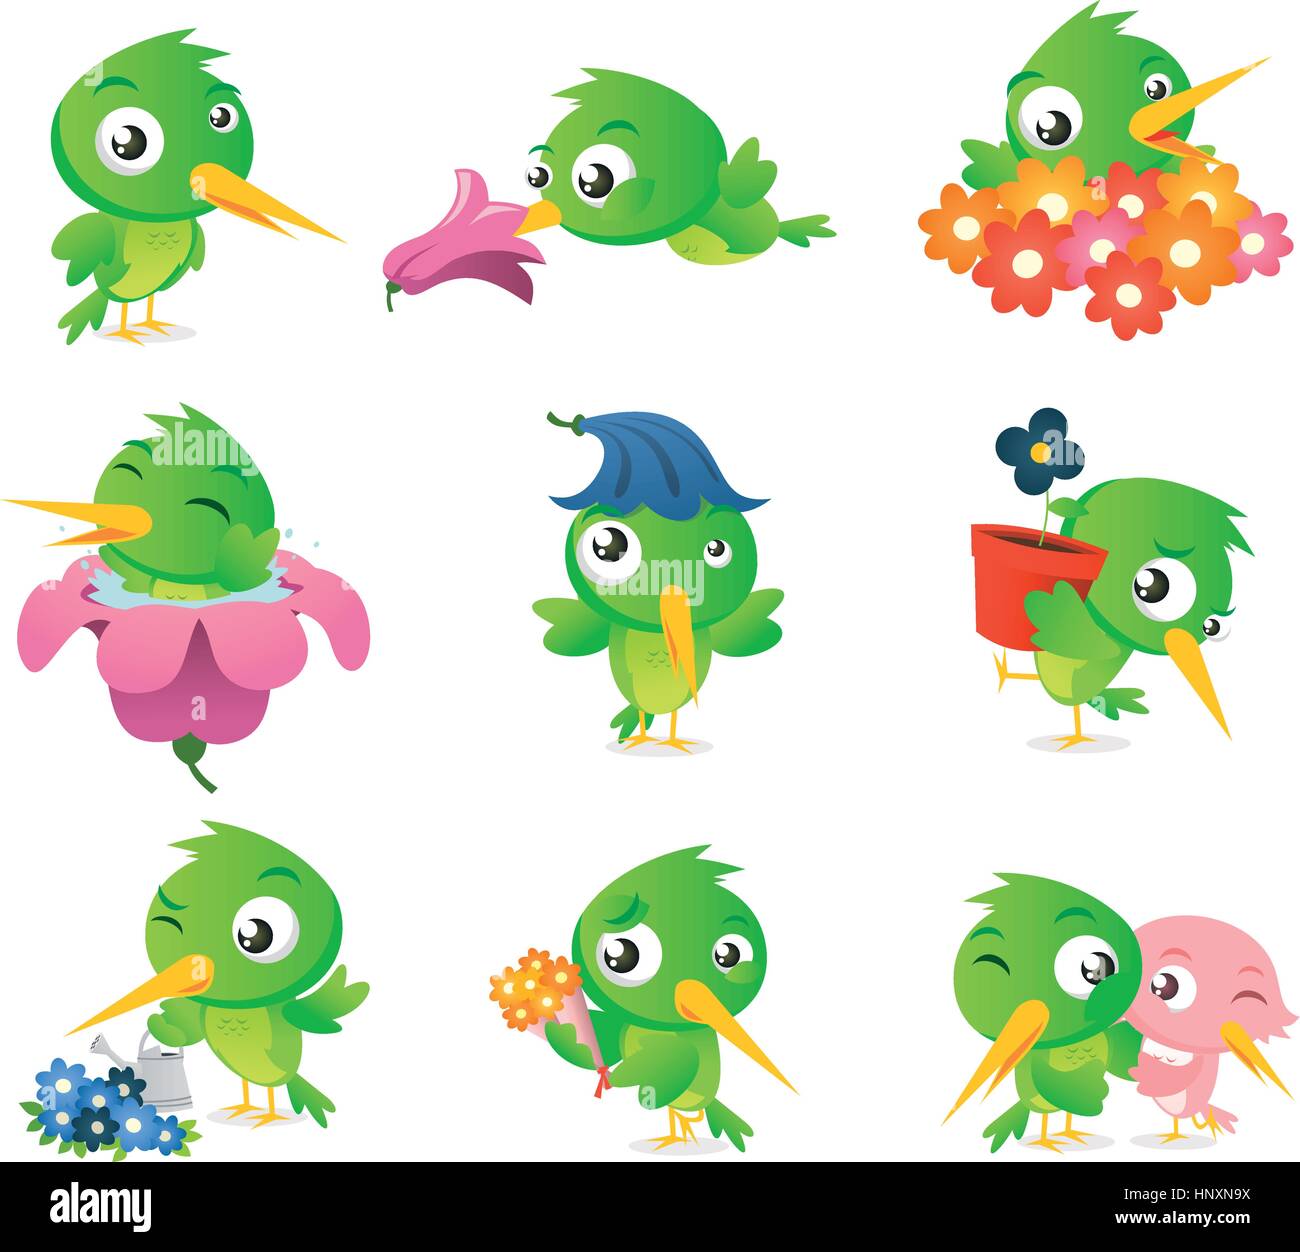 Cartoon Kolibri Vogel Set Sammlung, mit grünen niedlichen Vogel in verschiedenen Situationen wie, stehend Vogel, duftenden Blume Vogel, umgeben von Blumen Stock Vektor